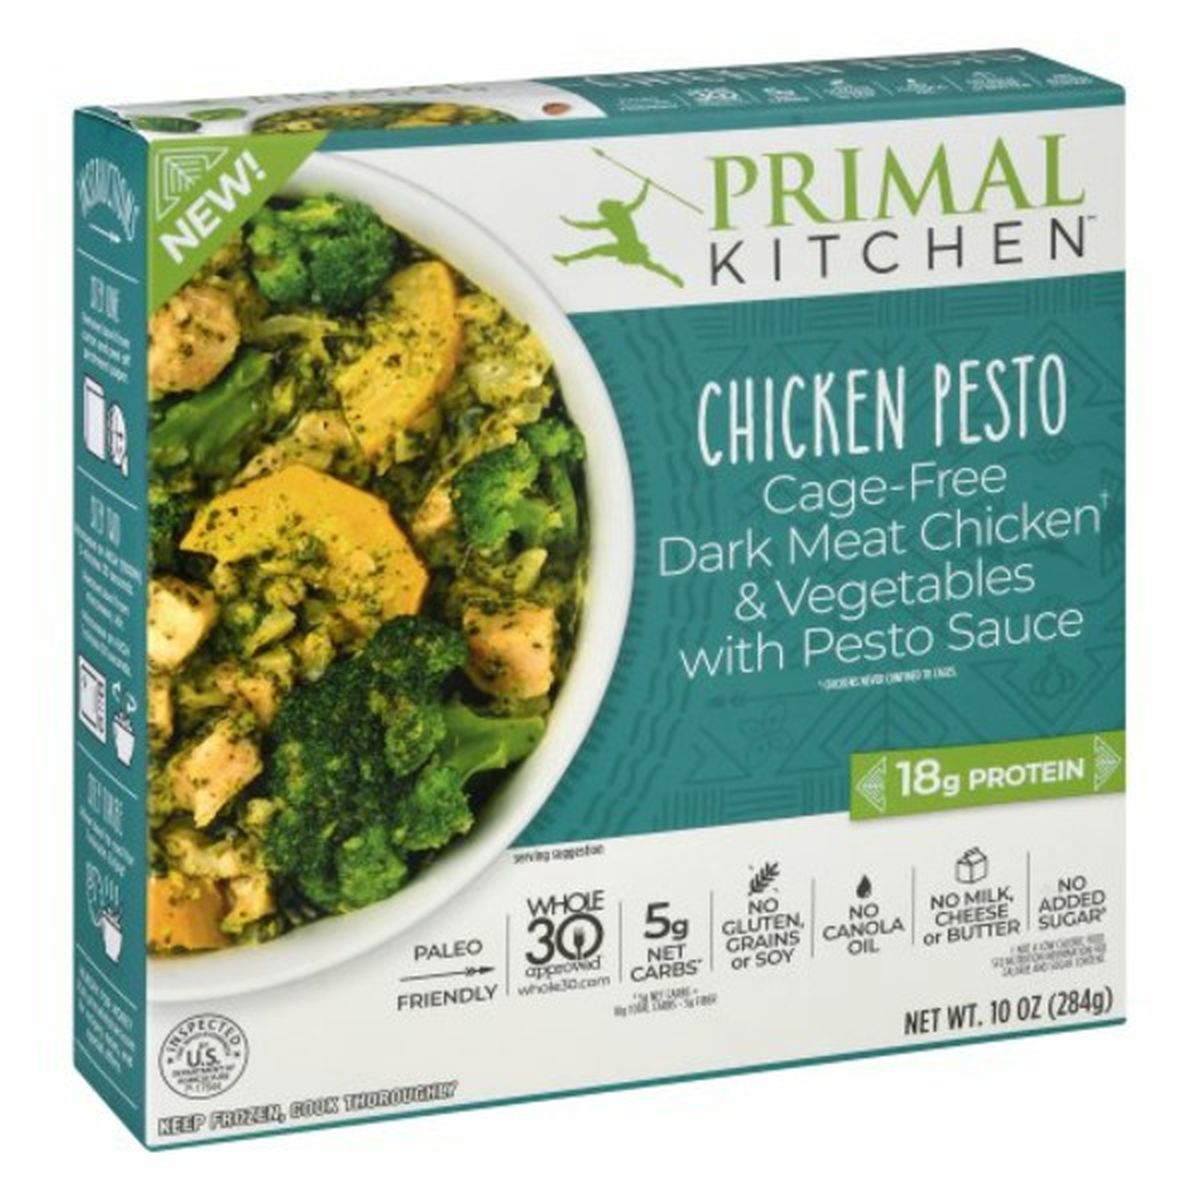 Calories in Primal Kitchen Chicken Pesto